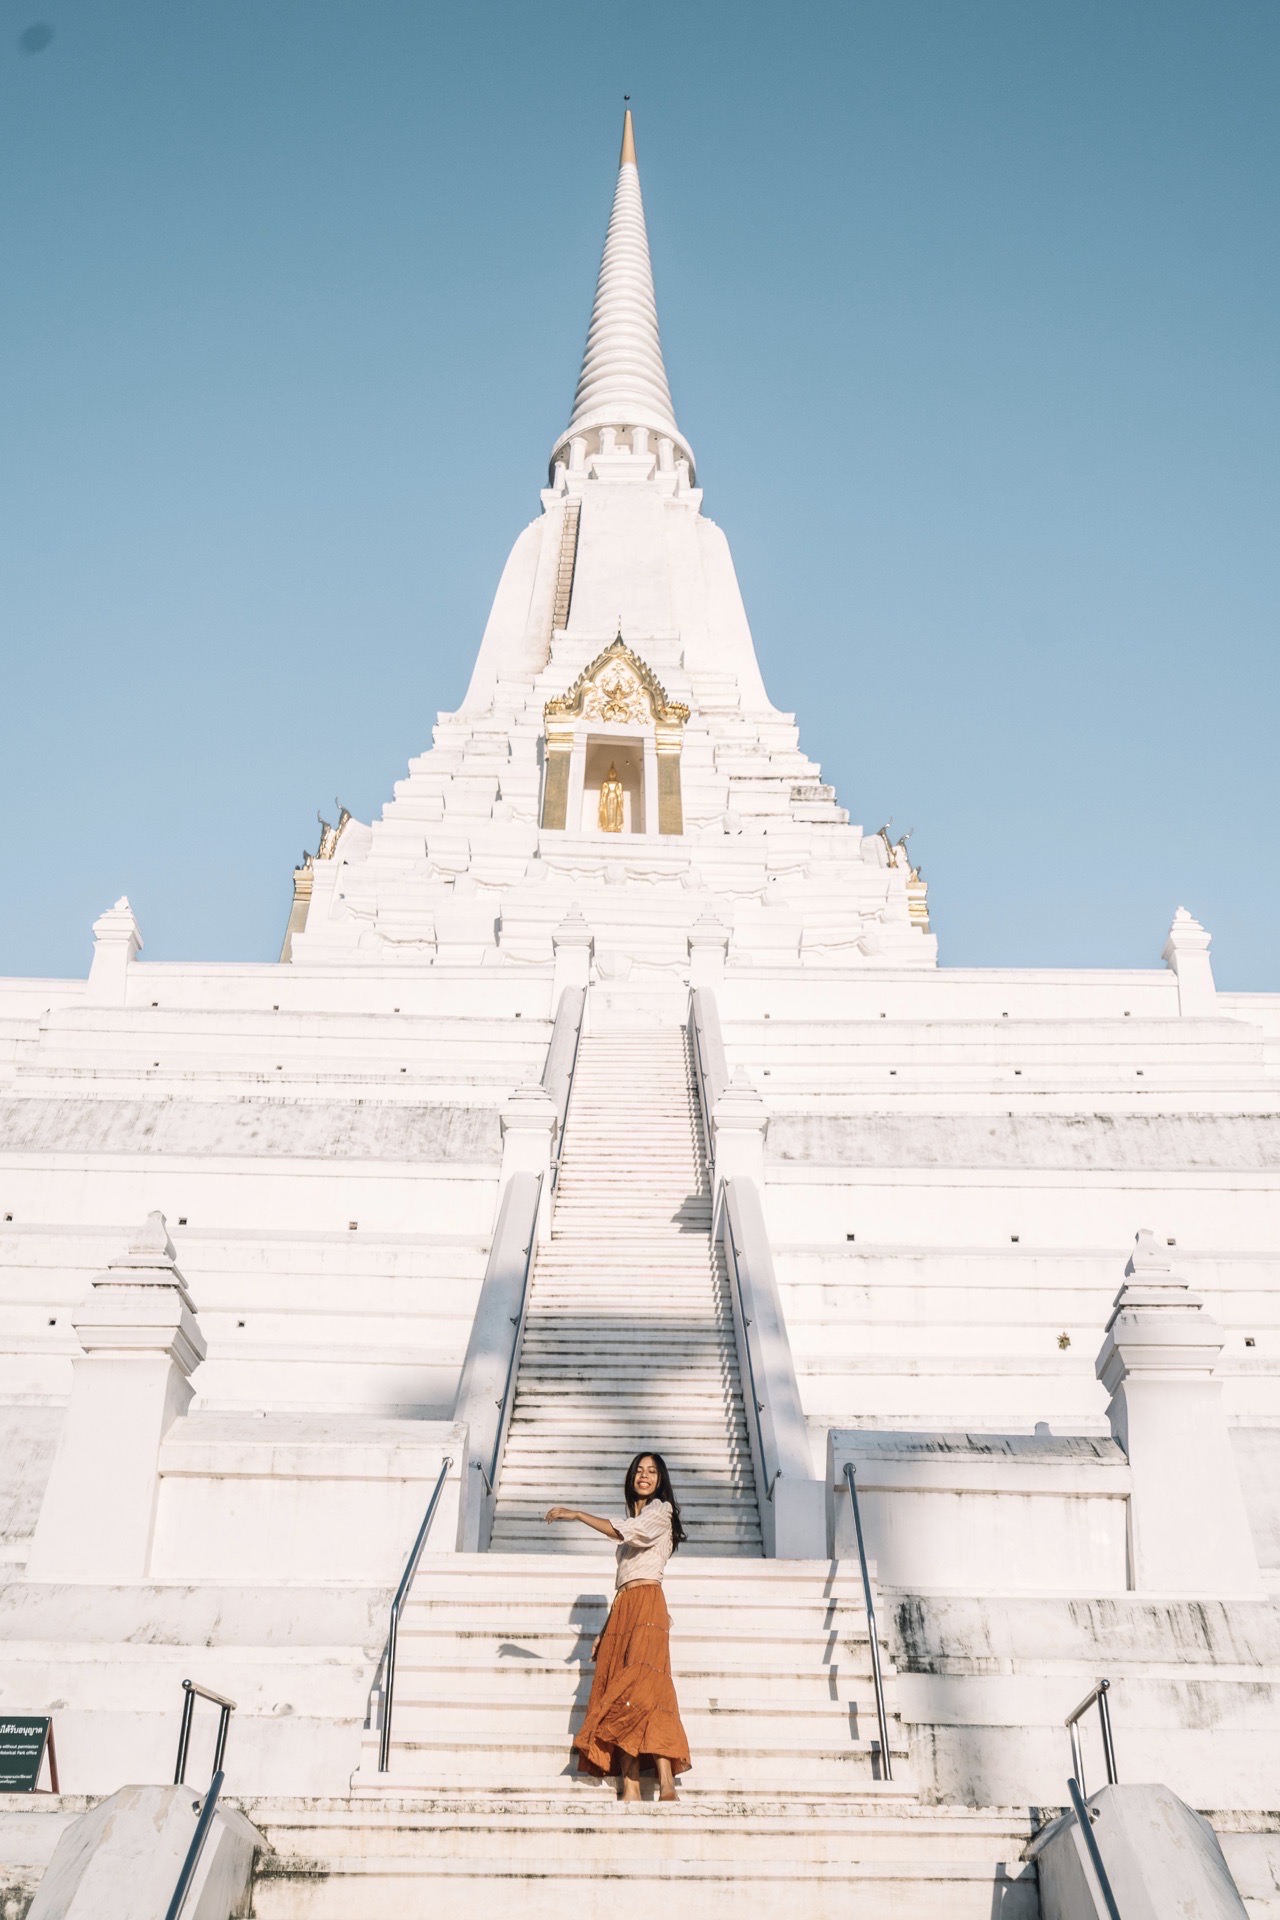 来泰国，千万不要错过这无人的白色佛塔  发现这个白色巨塔是在无意之中，这个白色巨塔是在曼谷周边一个小